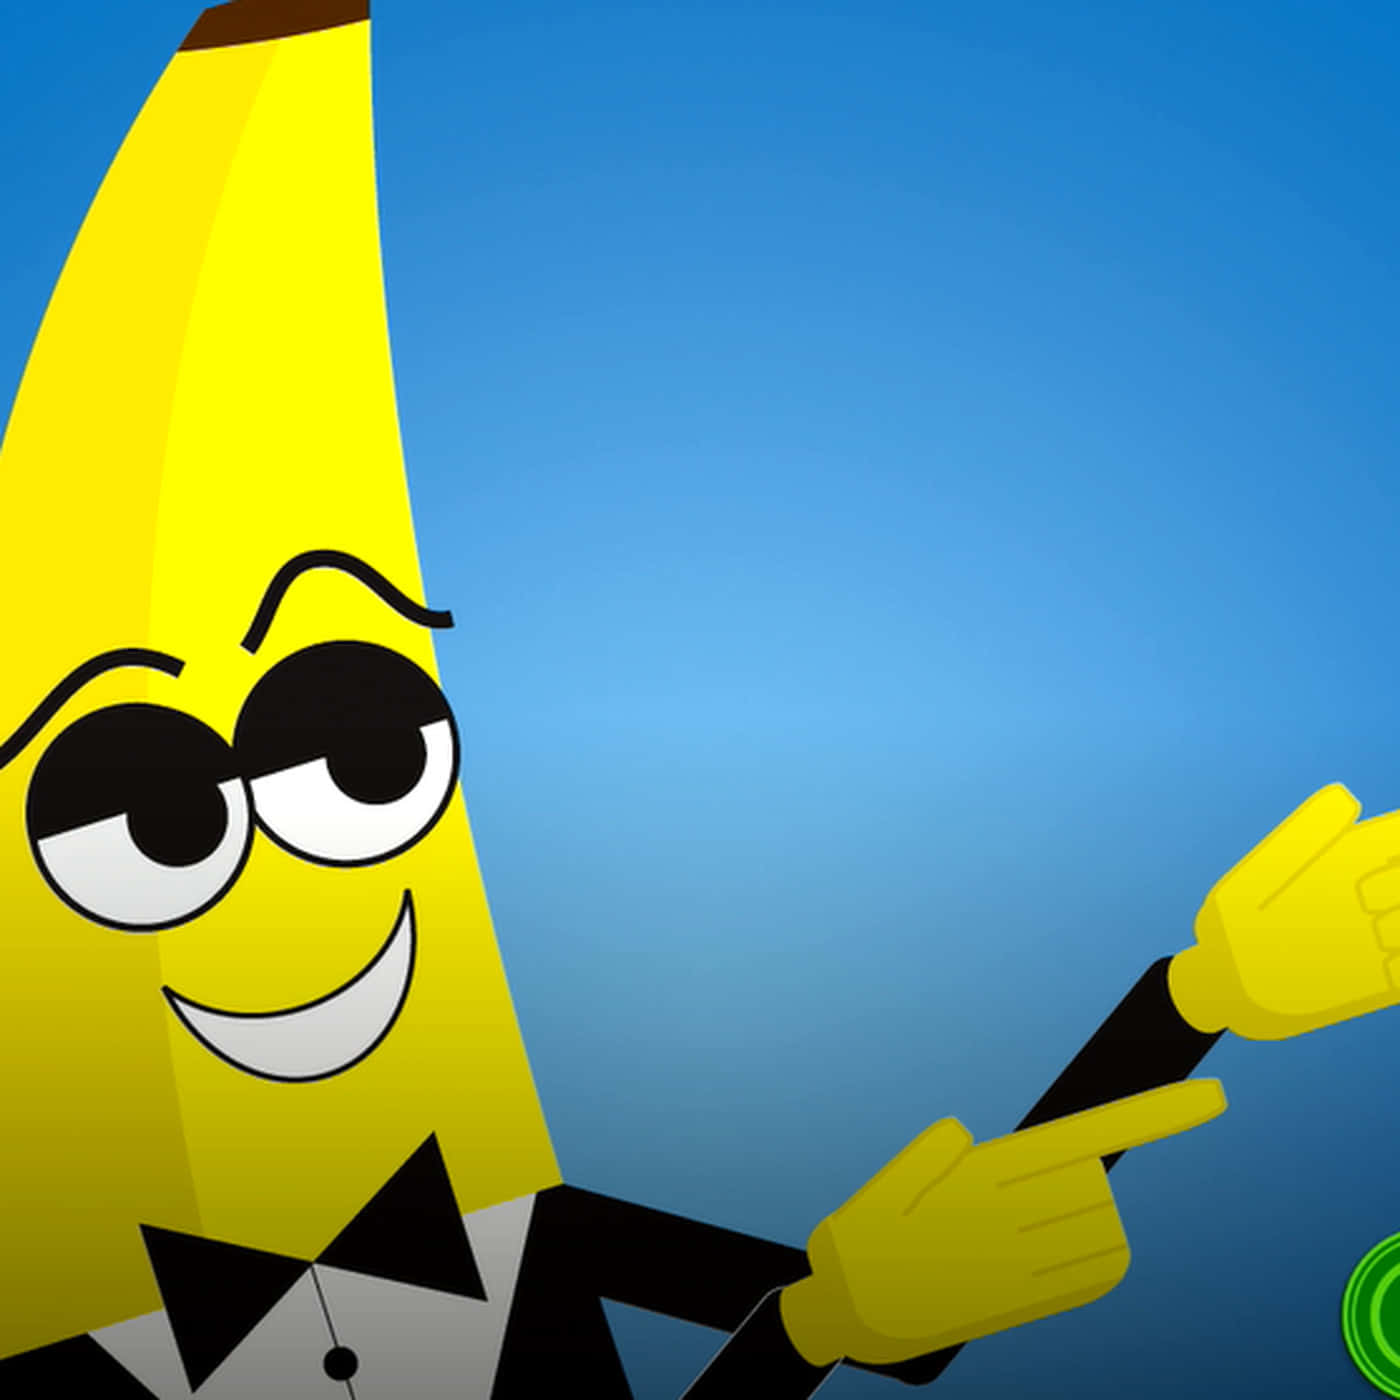 Immaginedel Profilo Xbox Del Banana Guy Figo